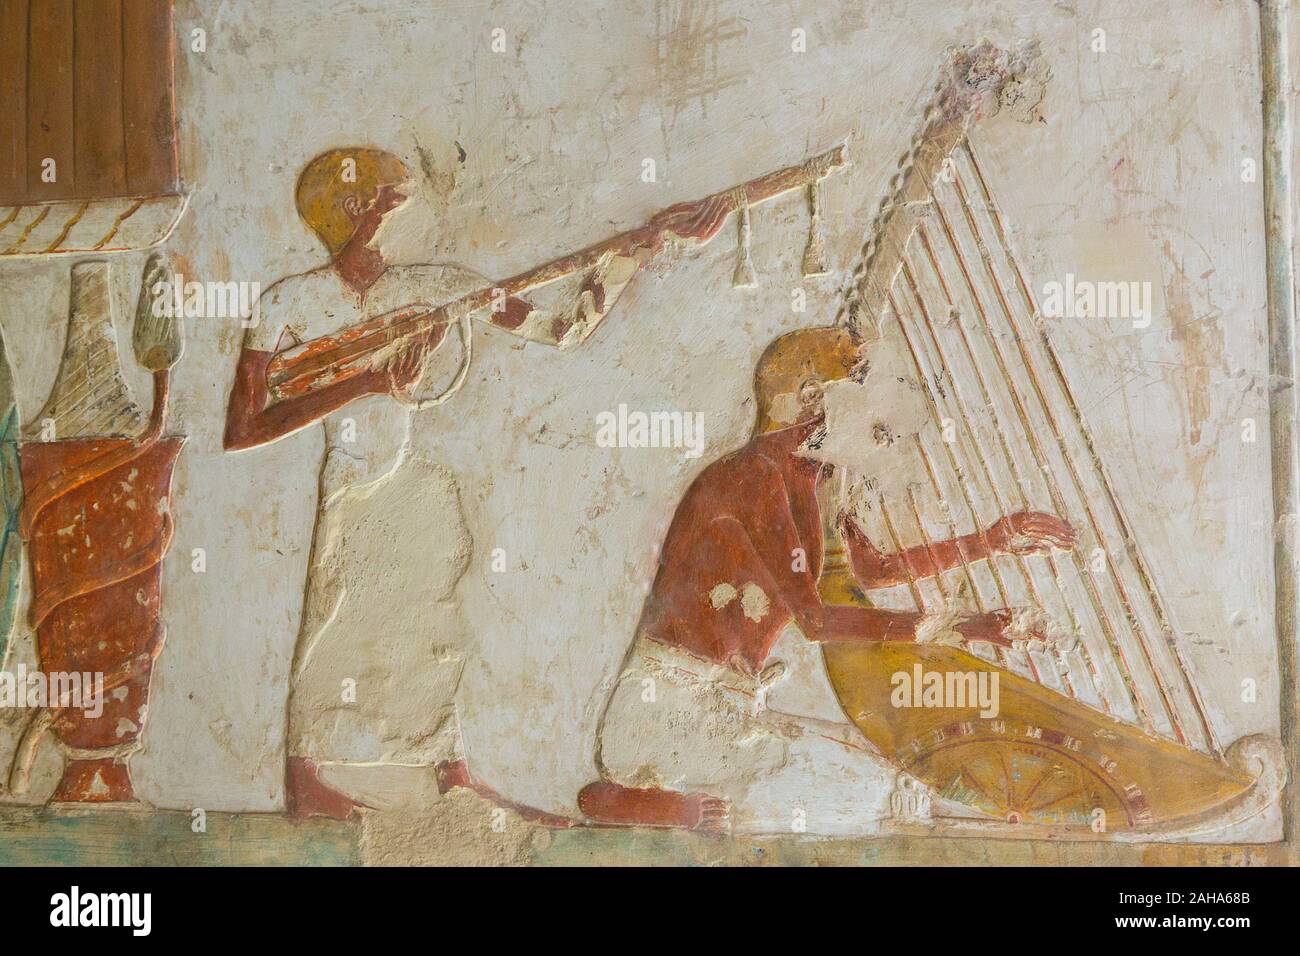 UNESCO Welterbe, Theben in Ägypten, das Tal der Adligen, Grab von Benia. Musiker spielen Laute und Harfe. Die Harfe ist beweglich durch seine Räder. Stockfoto